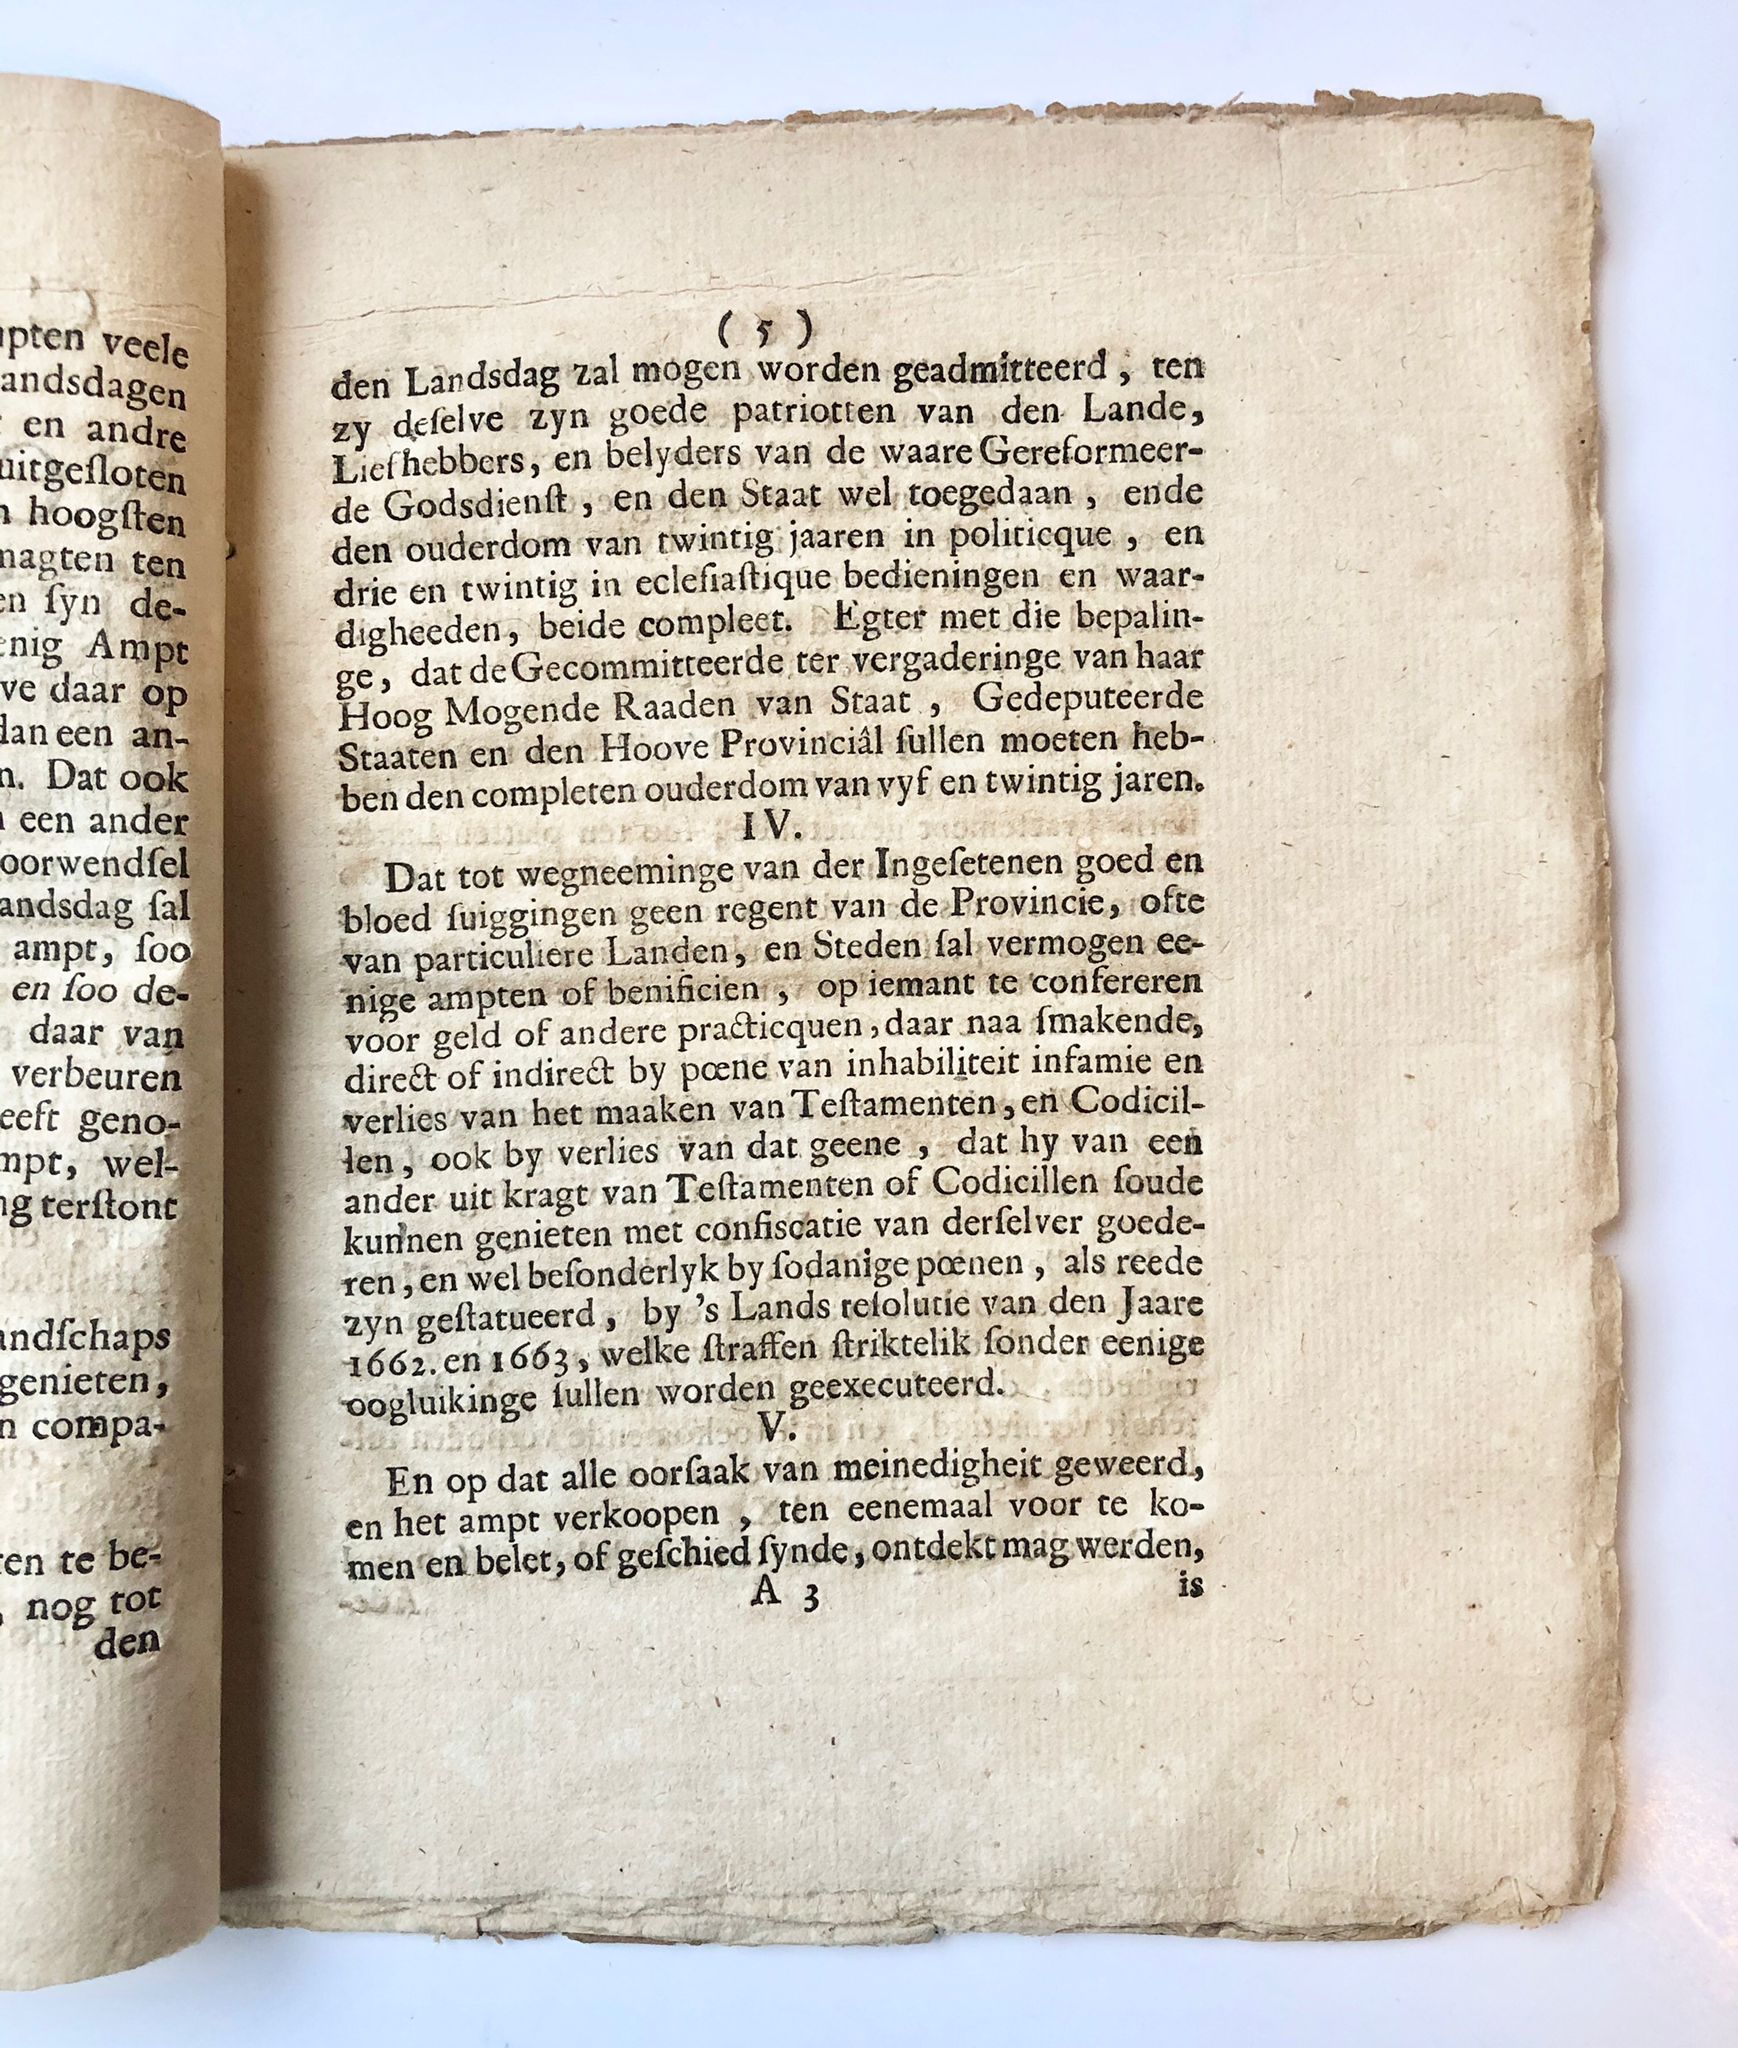 [Friesland, 1748] Copia Autenticq van de notificatie poincten reformatoir, opgestelt by de gesamentlyke Gecommitteerden uit de Landen en Steden van Friesland, thans op de Doele vergadert, en aan haar Ed. Mog. De Heren Staten van Friesland gepræsenteert, om te strekken tot een Fundament van Regeringe, in gevolge van het twede Artikel van de Notificatie van den 5 Juny 1748. Als synde geextraheert uit de Poincten en Reformatoir van de Jaren 1672. 1673. Voor soo verre toepasselyk, by de gemelde Heeren Staten volgens bovenstaande Notificatie geapporbeert. 1748, 8 pp.